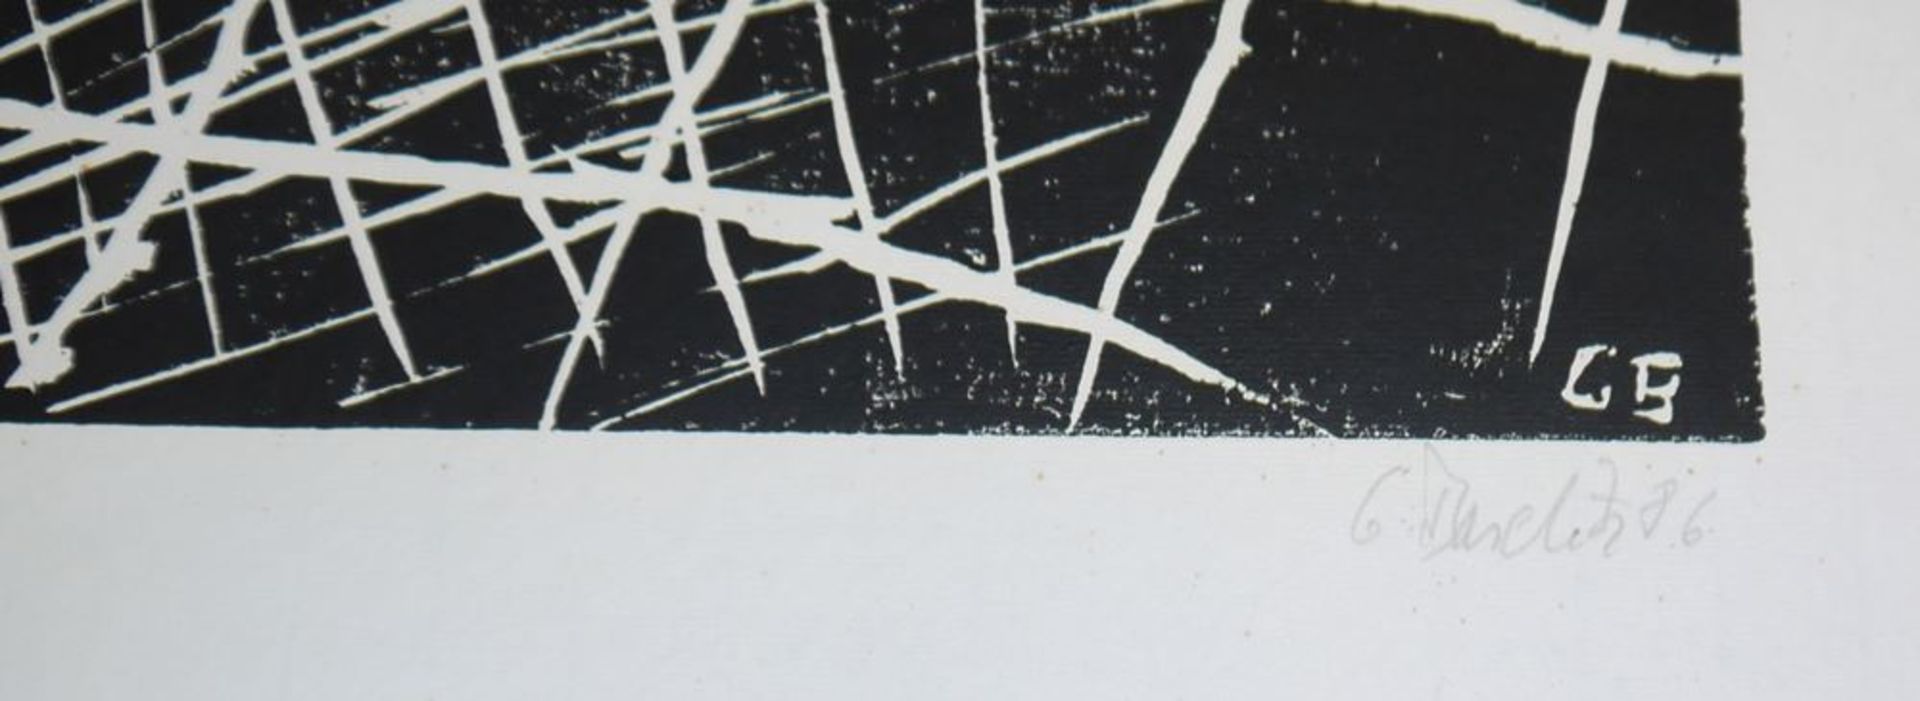 Georg Baselitz, "Zwei Pferde", signierter Holzschnitt von 1986 - Image 2 of 2